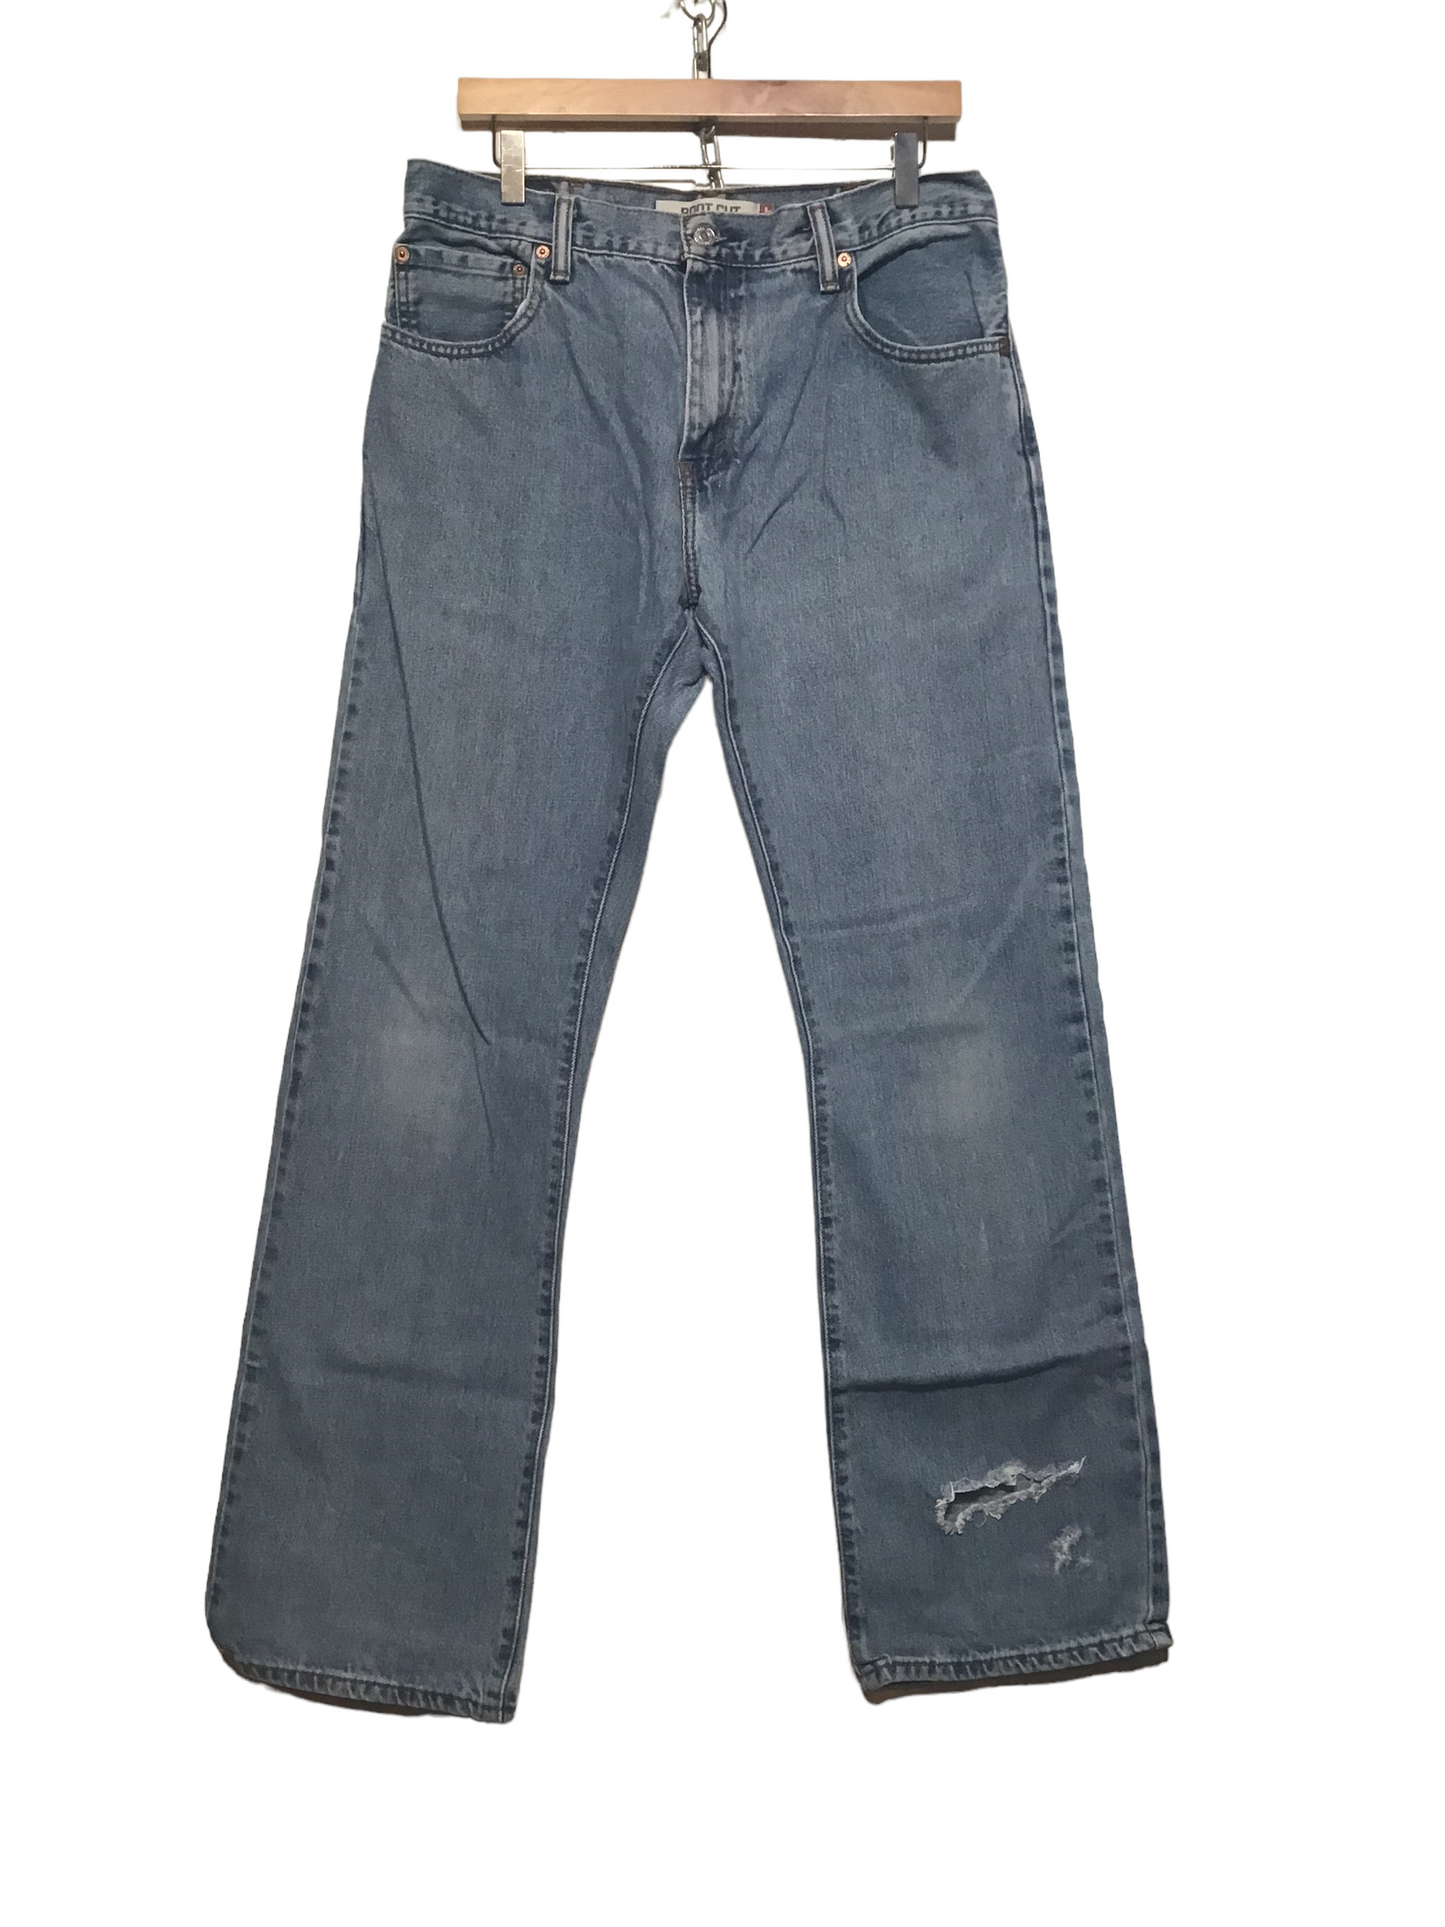 Levi 517 Jeans (33X34)